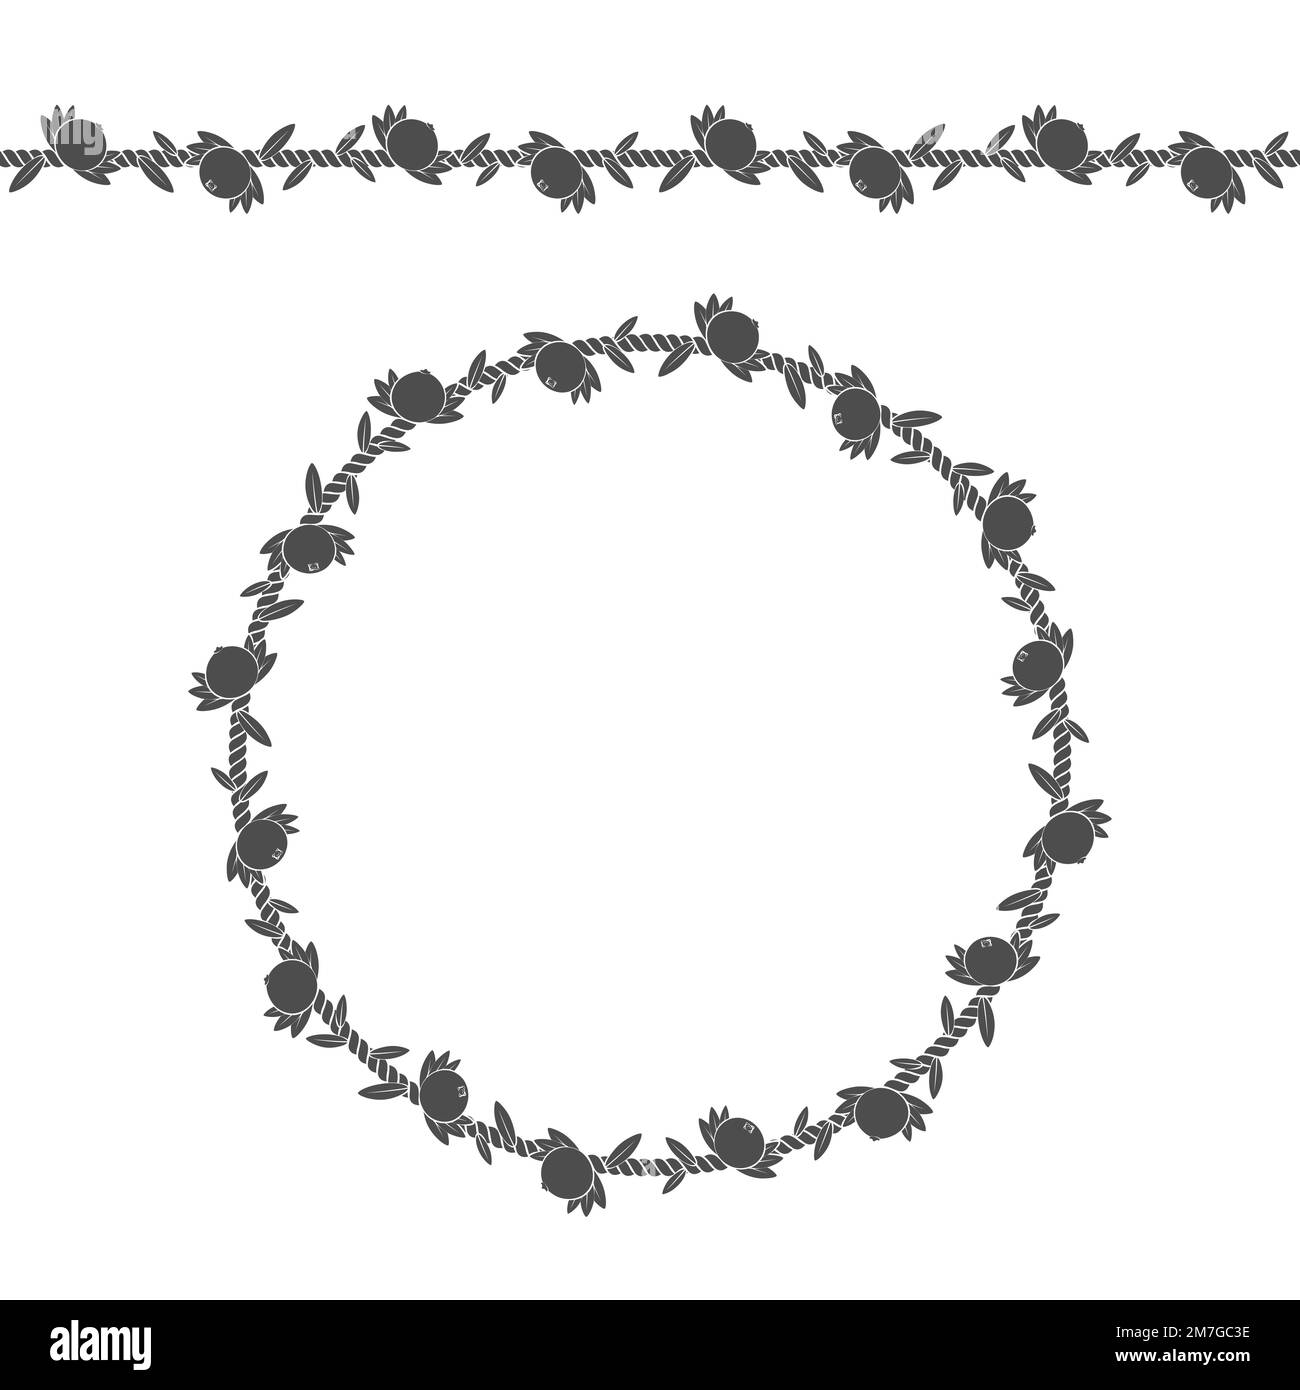 Nahtloses Muster und Rahmen der Schnur mit Cranbeeren, Preiselbeeren und Blättern. Isolierte Objekte auf Weiß. Stock Vektor